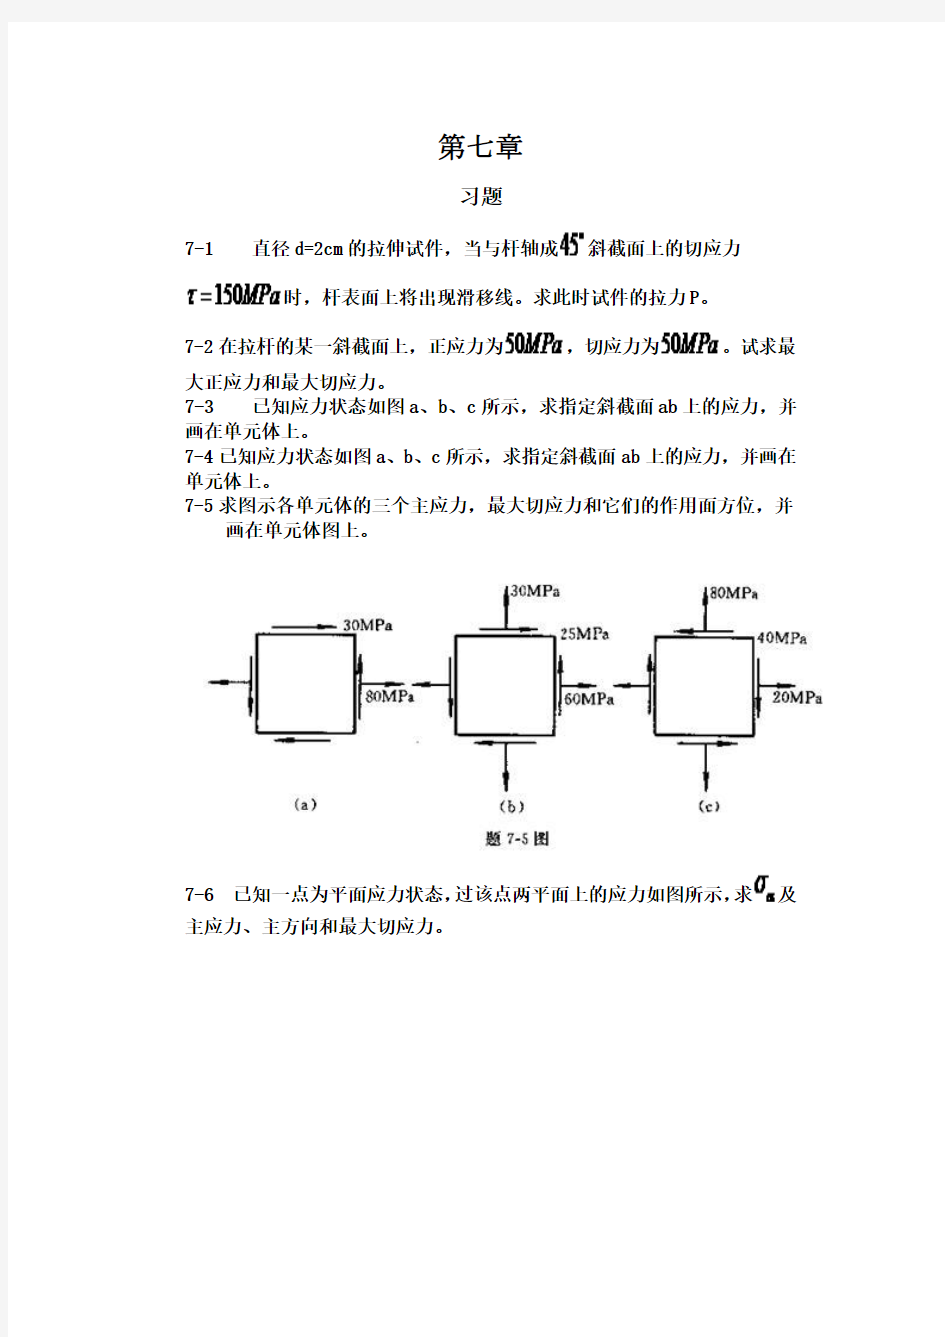 工程力学--材料力学(北京科大、东北大学版)第4版第七章习题答案